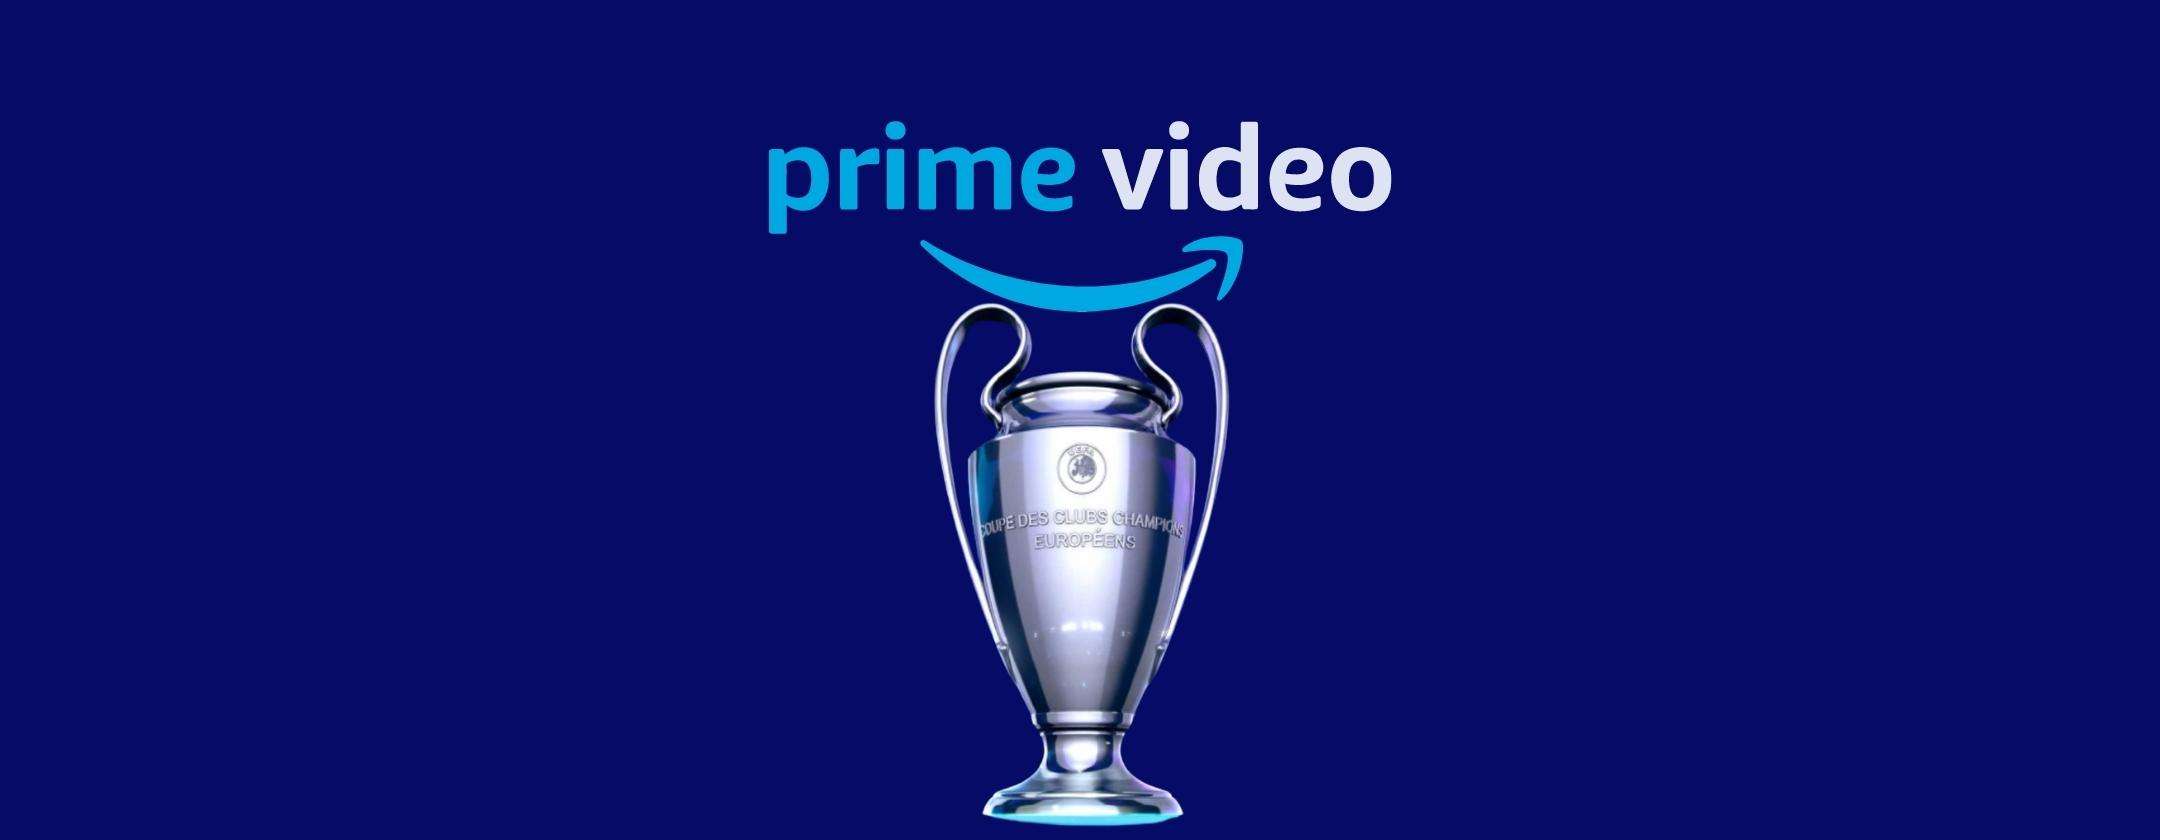 Amazon Prime Video: come vedere gratis Liverpool-Villarreal